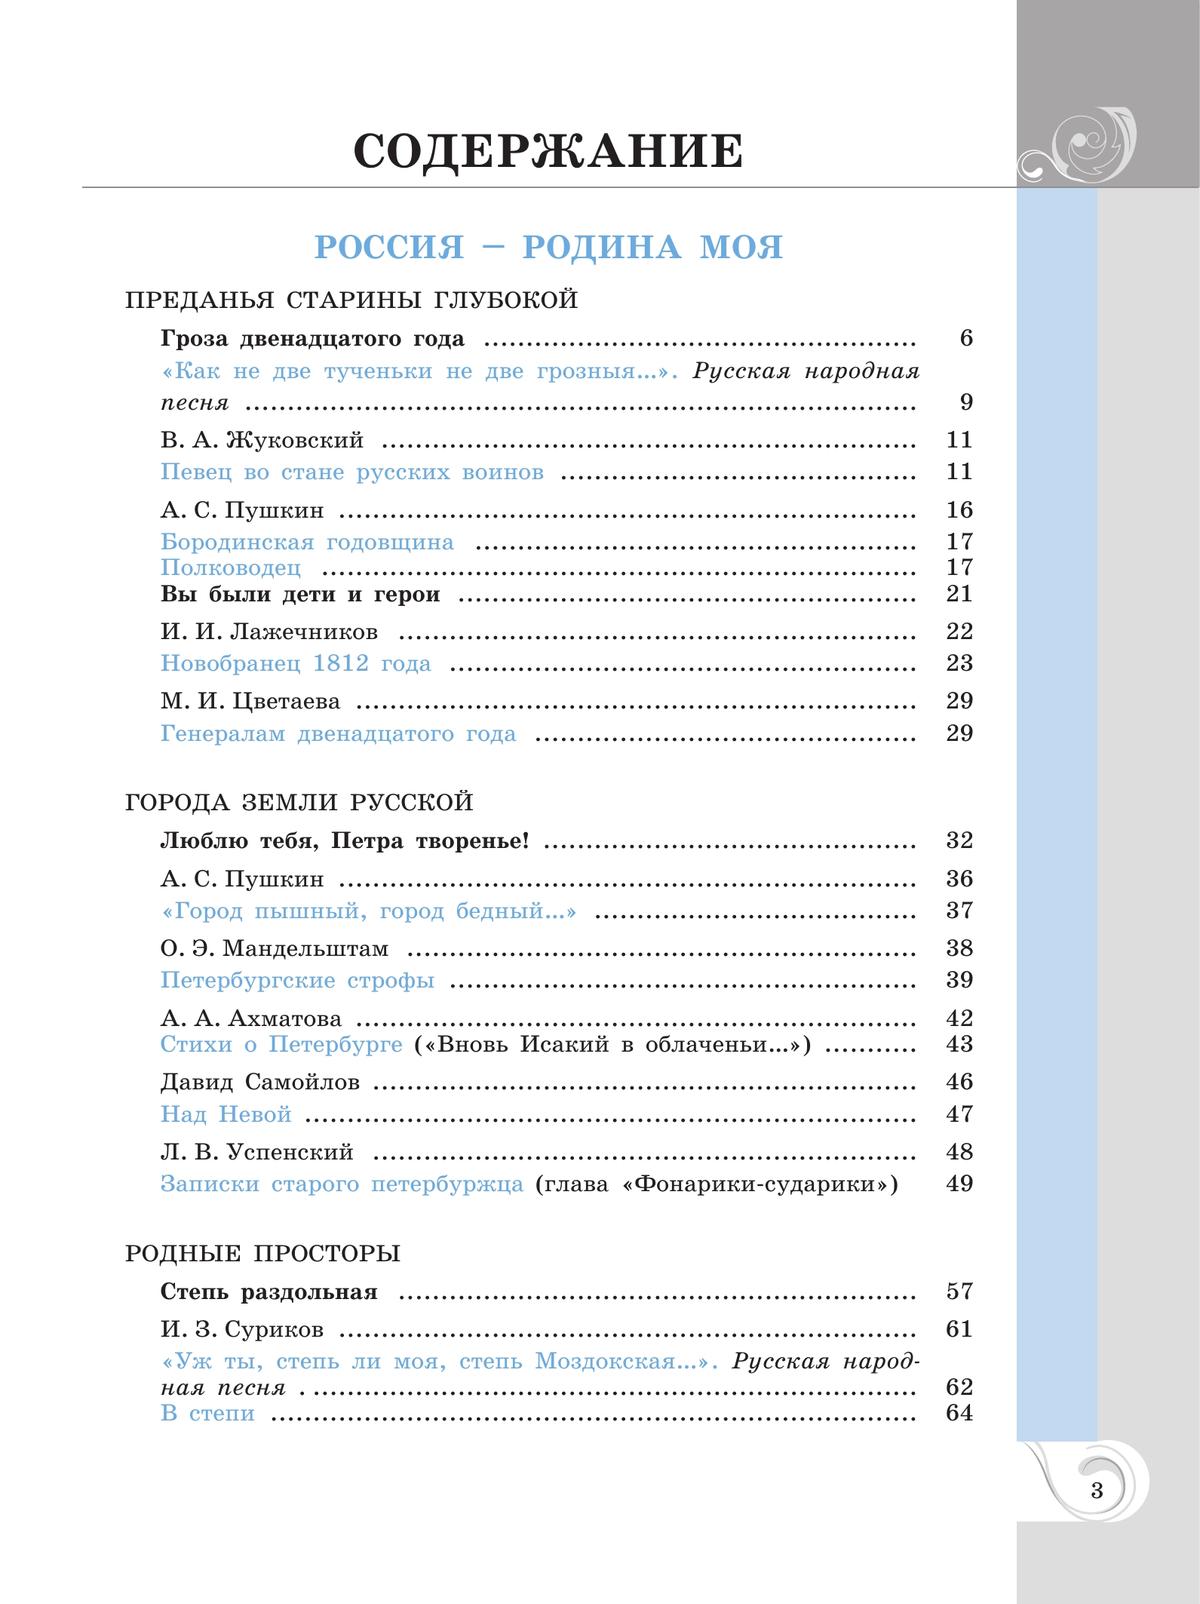 Родная русская литература. 9 класс. Учебник 7